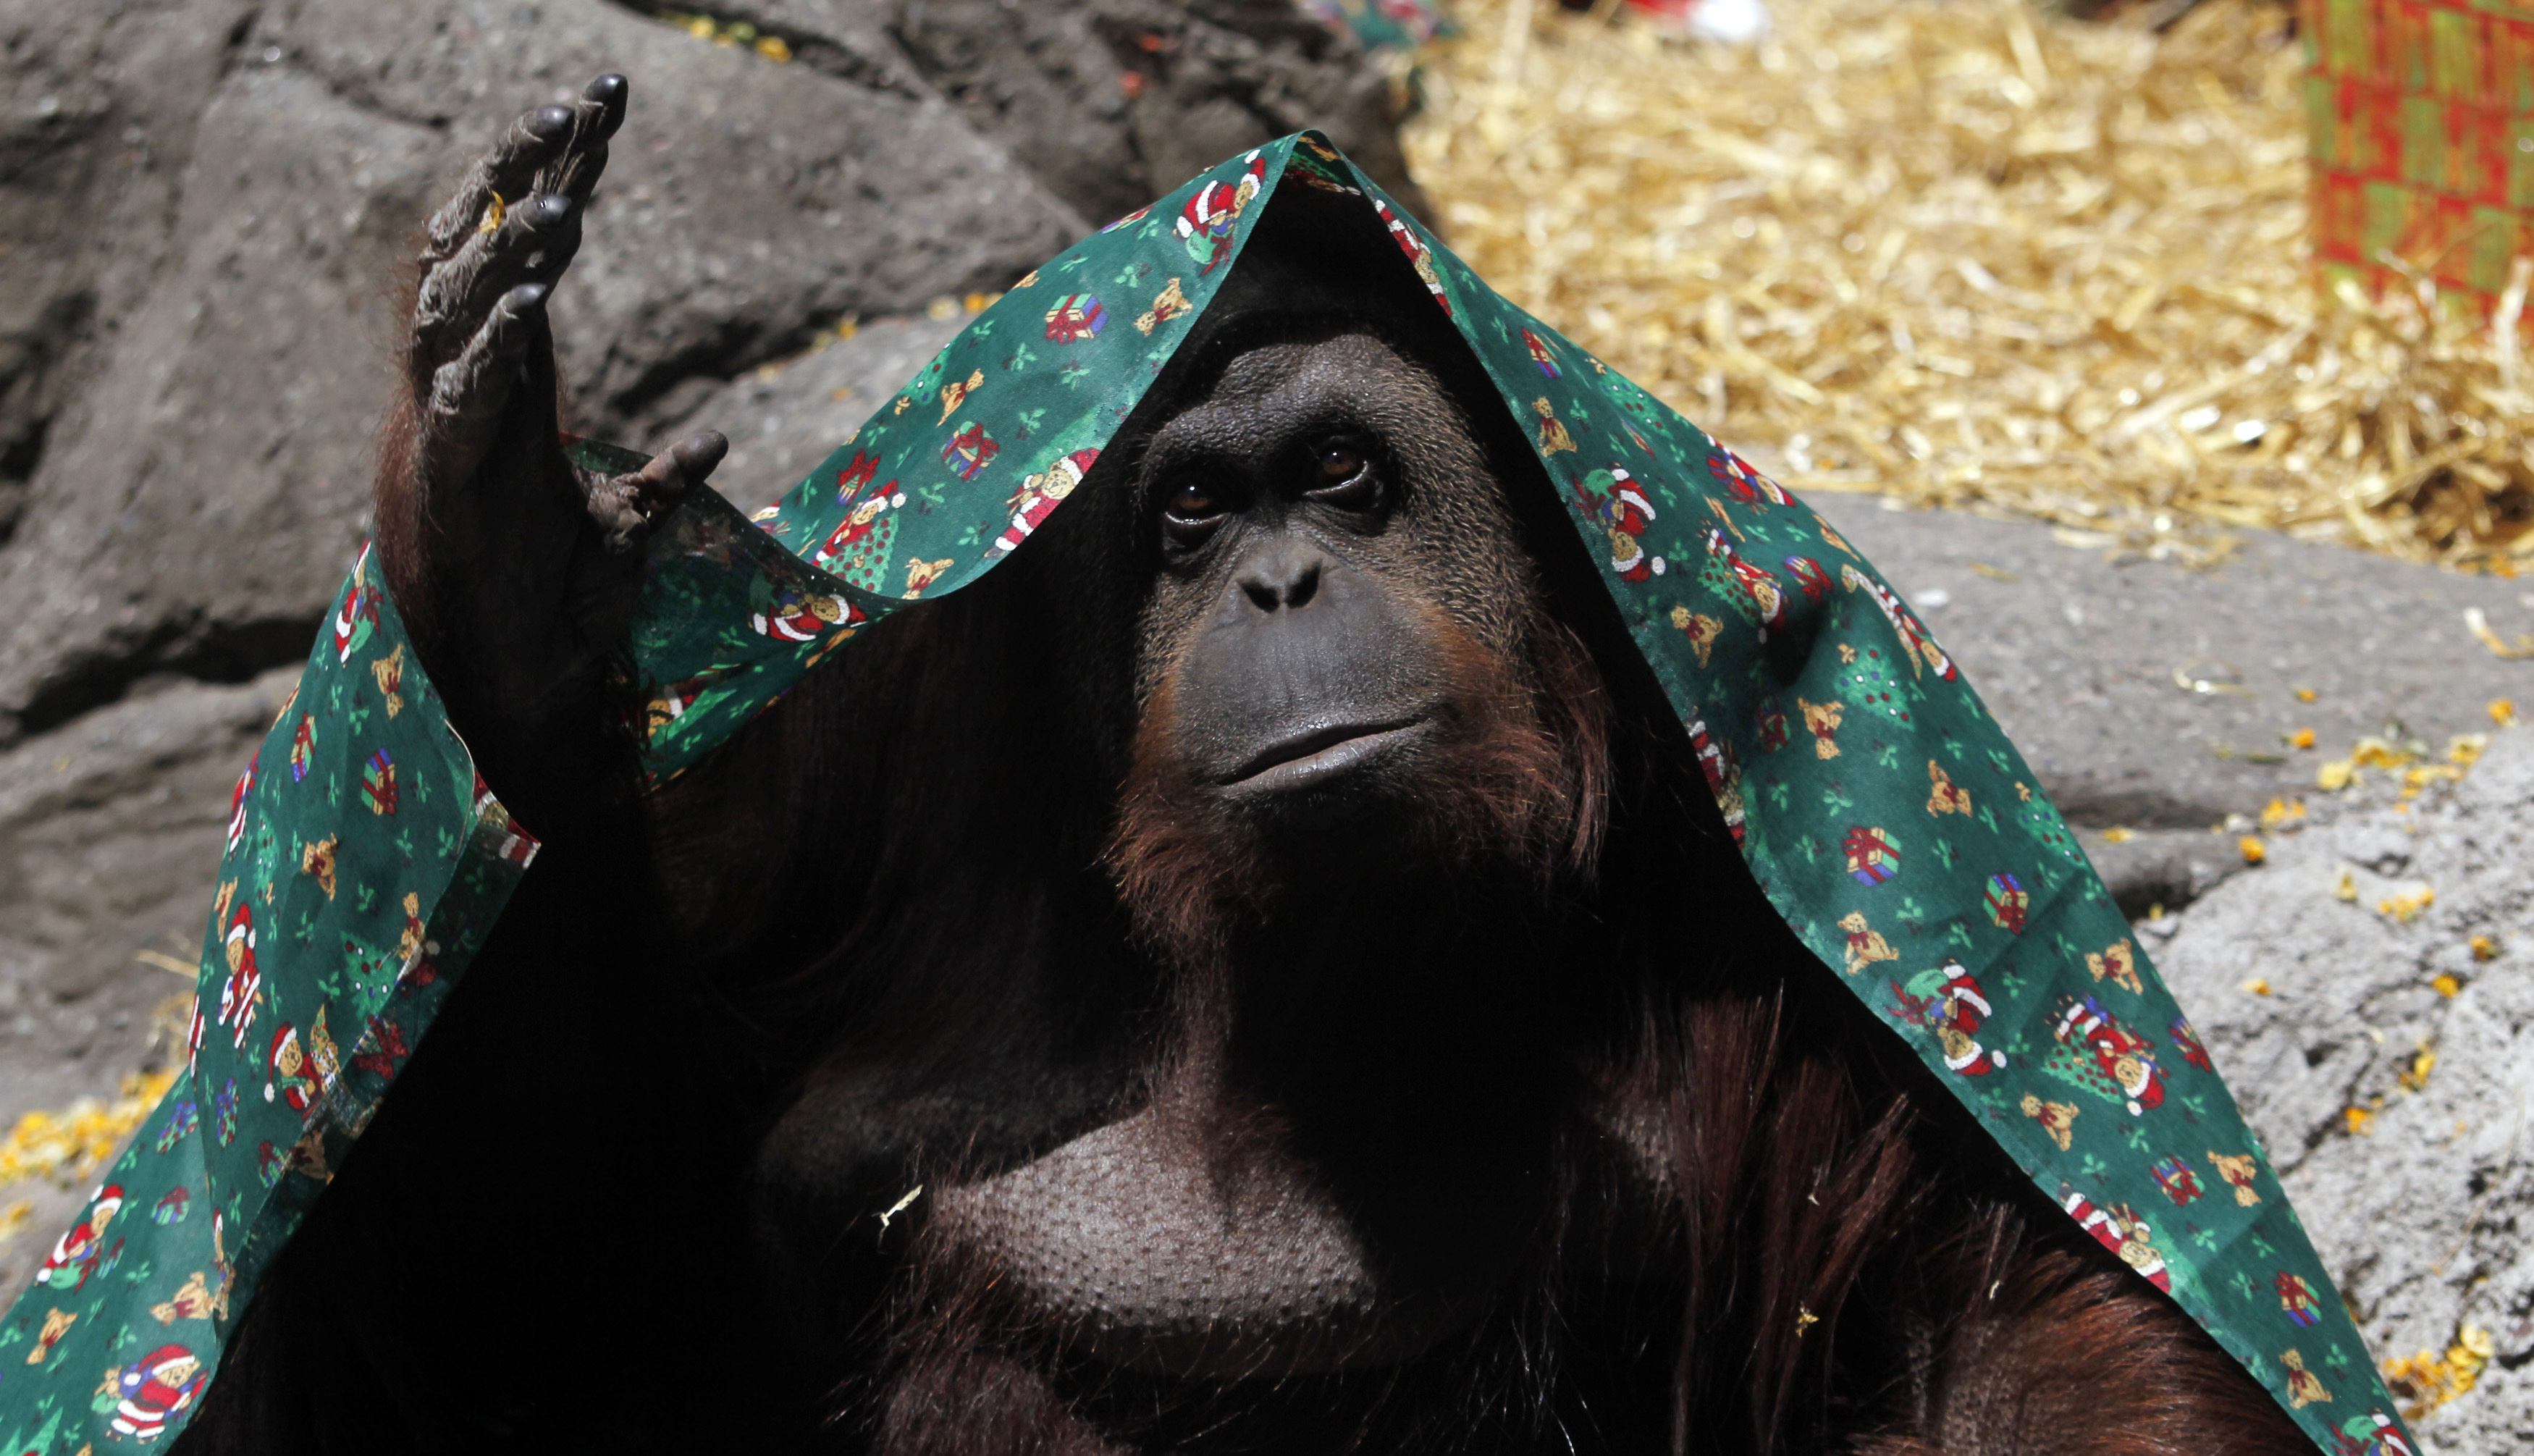 Orangután cautivo tiene derecho humano a la libertad, decide la Corte